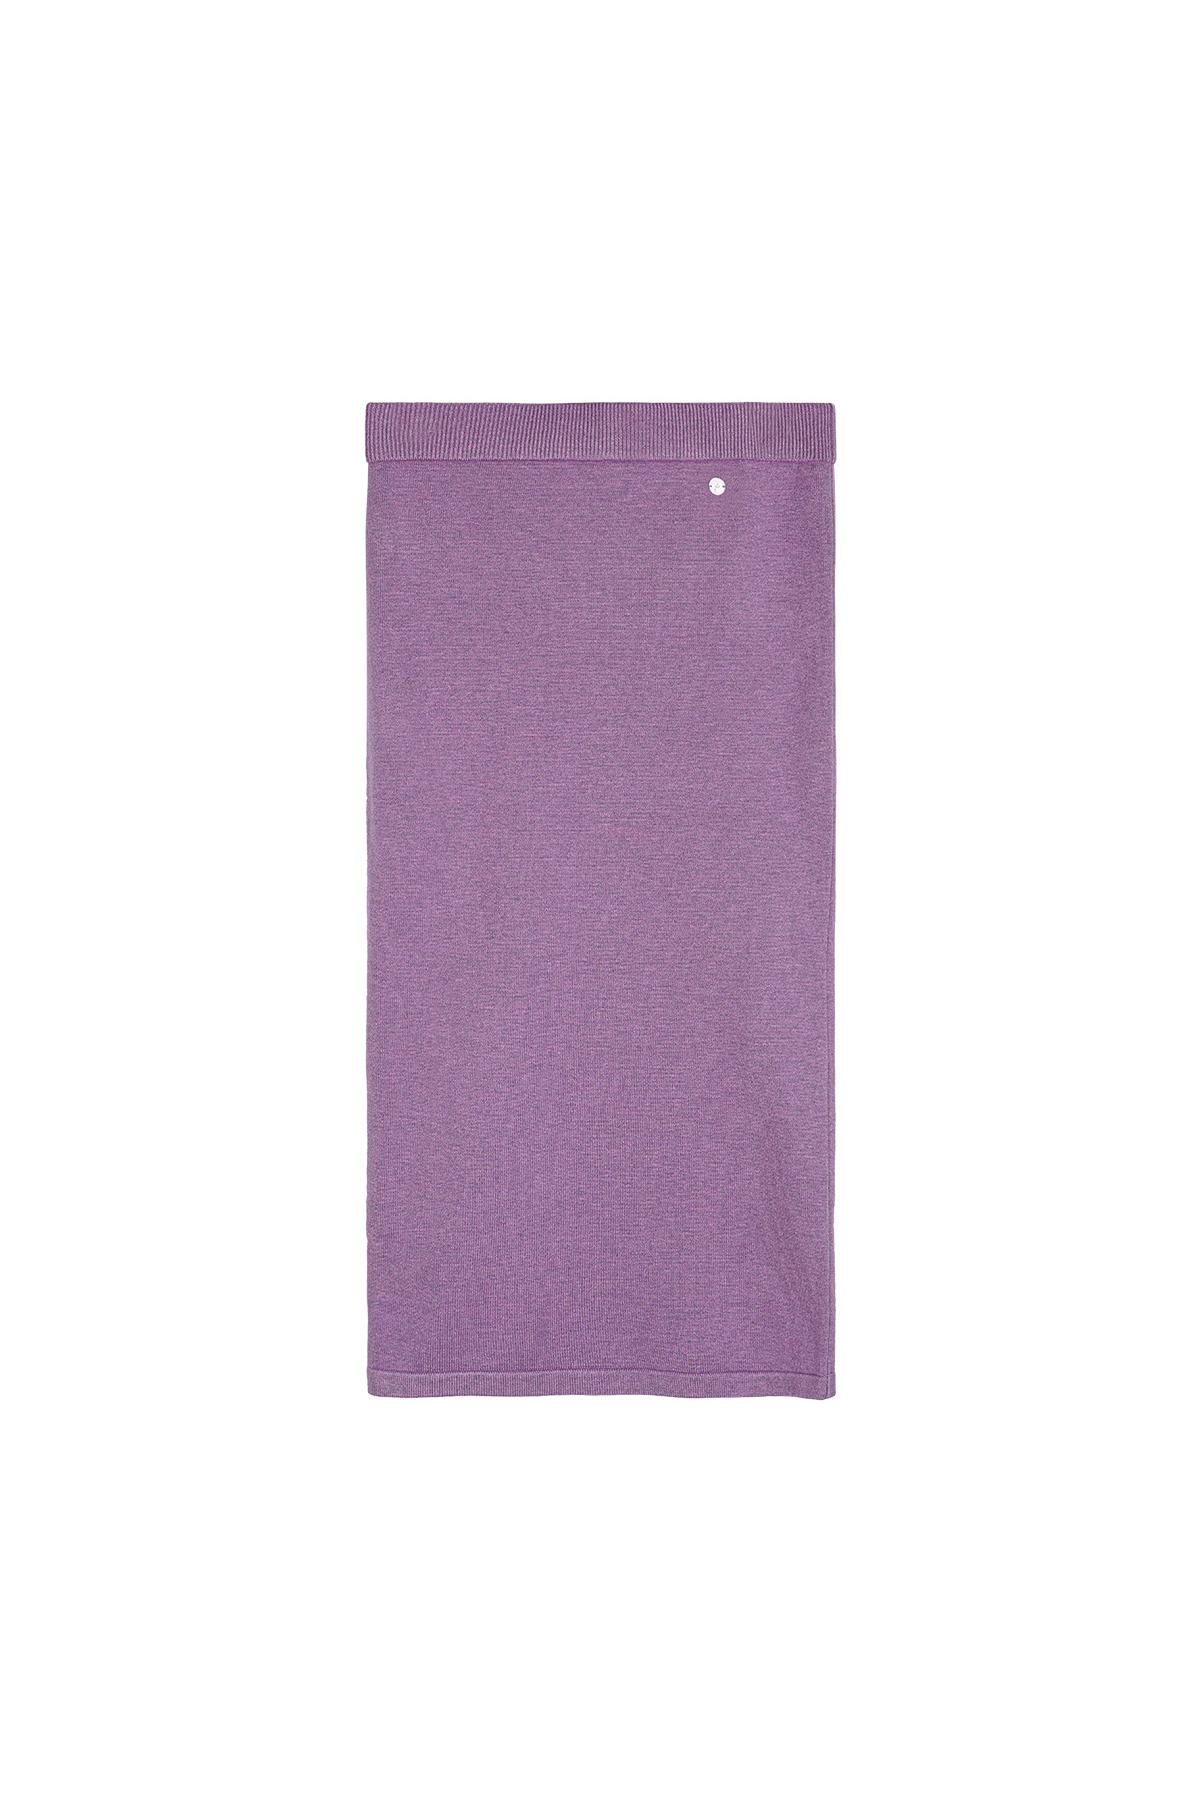 Pencil skirt Purple L 